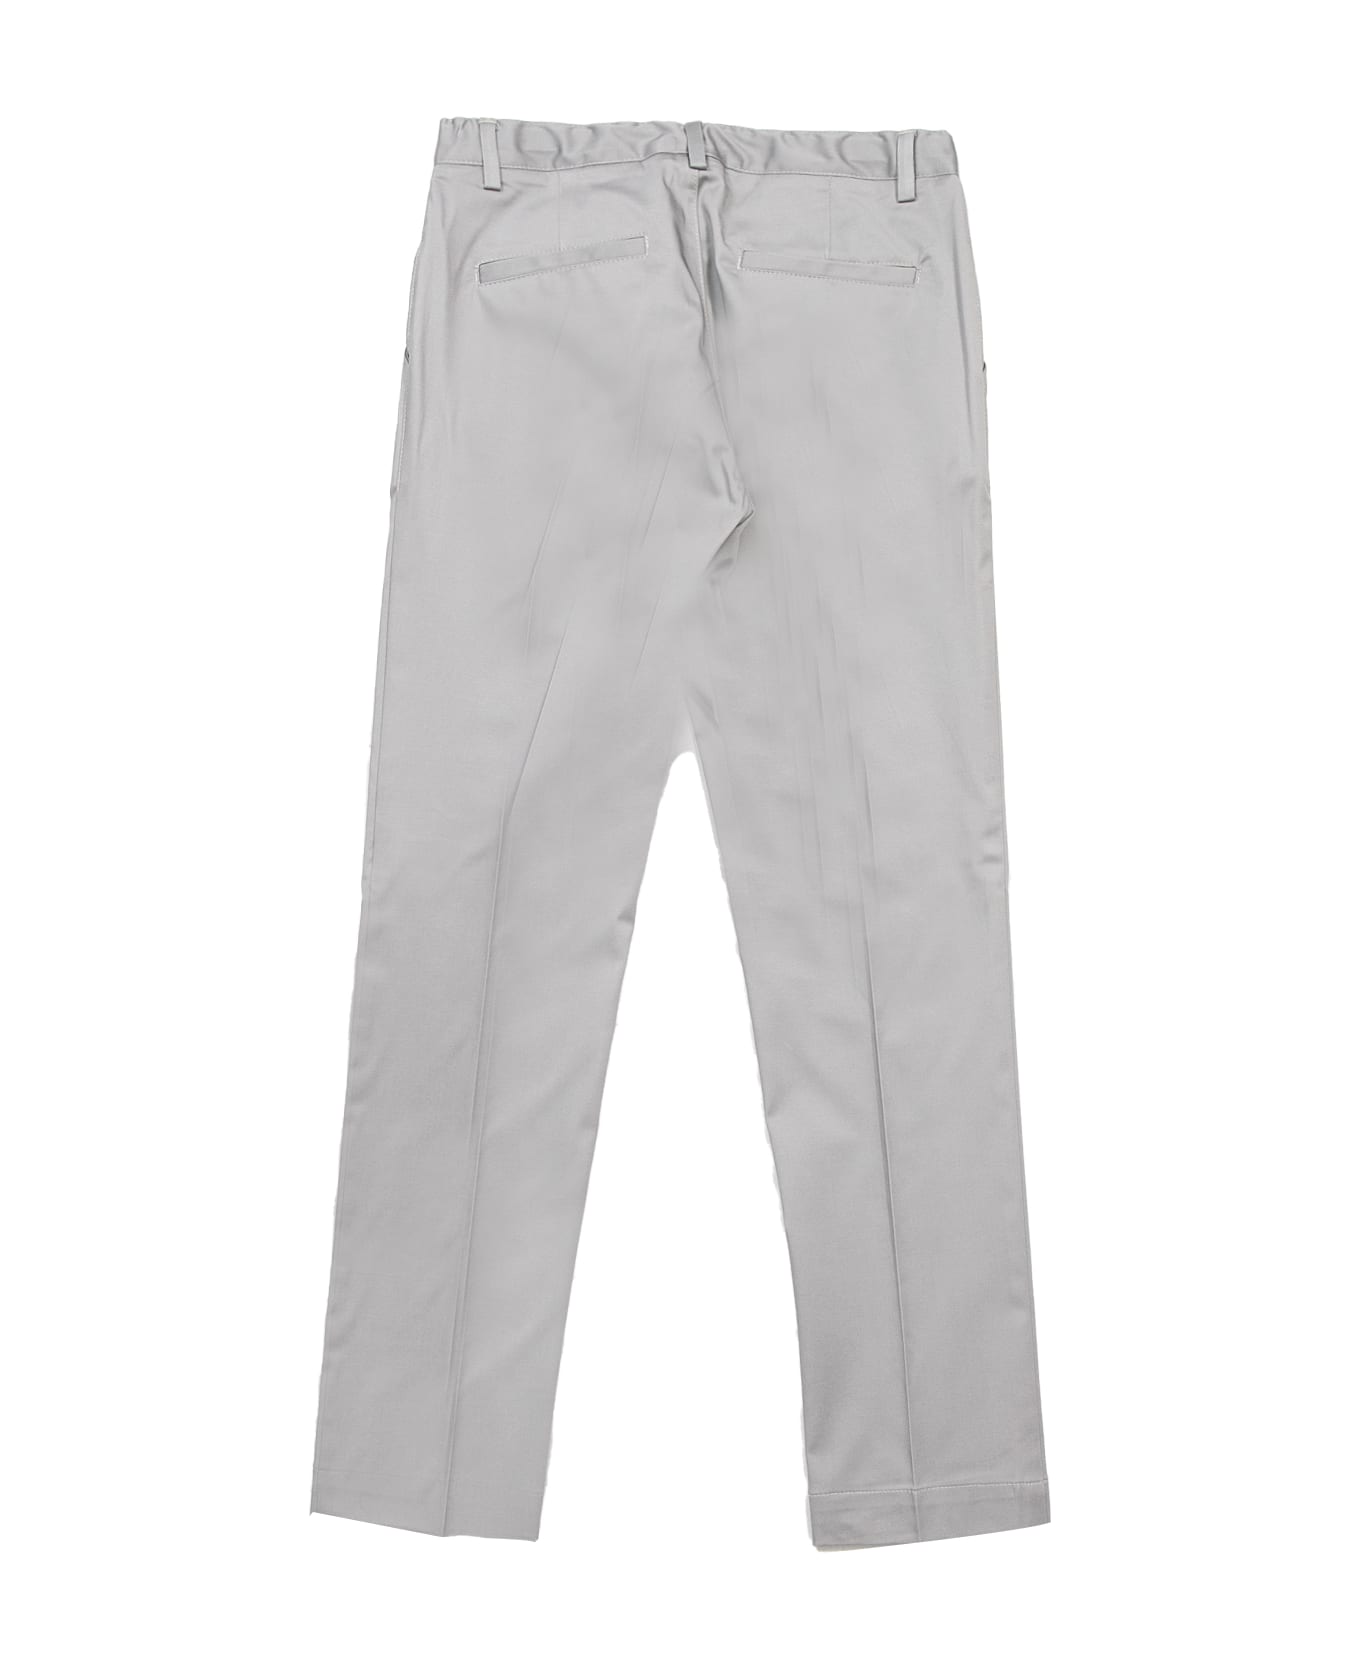 Paolo Pecora Cotton Pants - Grey